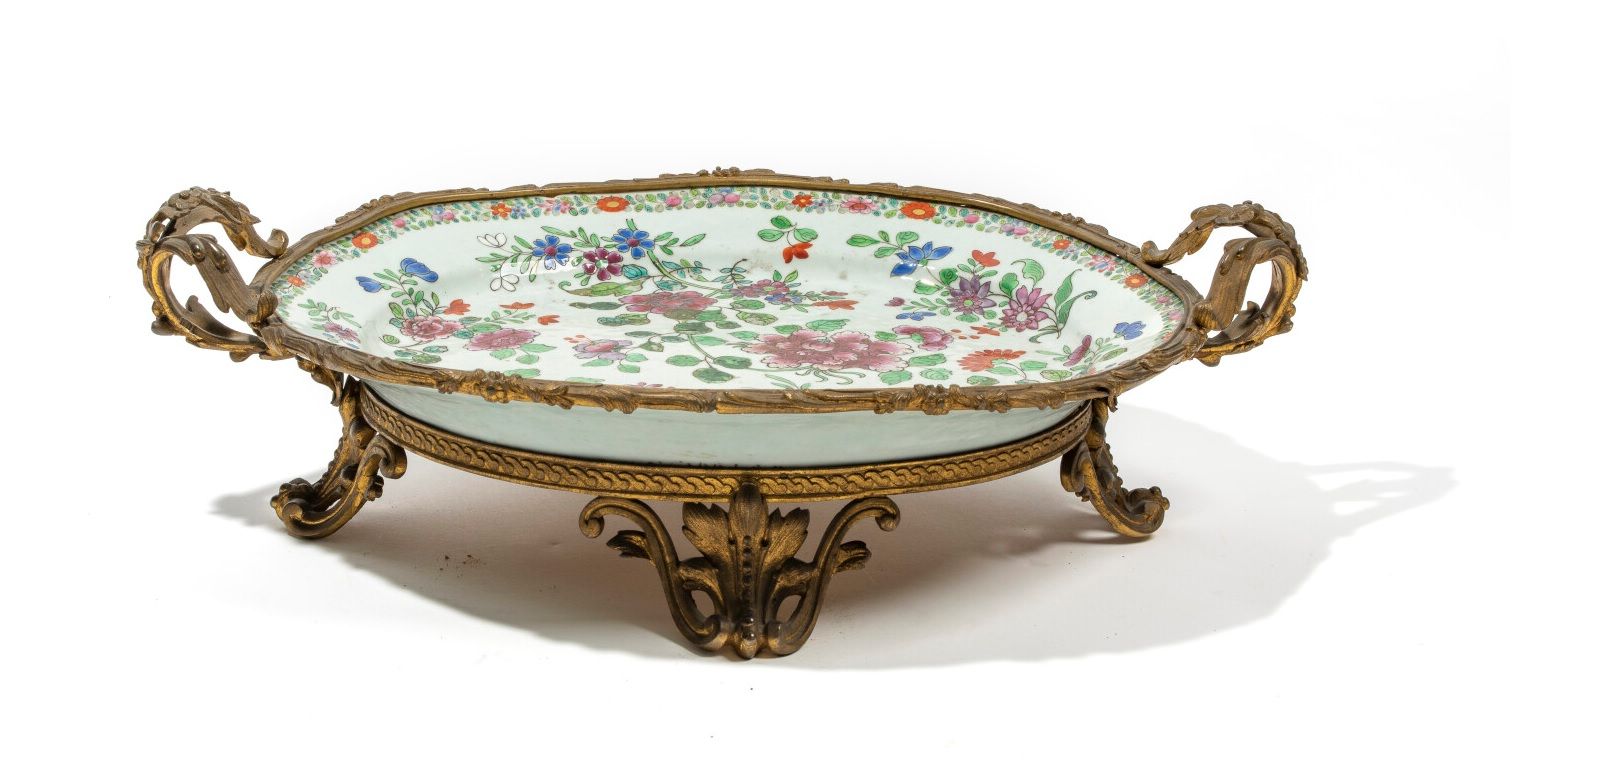 CHINE - Vers 1900 
瓷盘上装饰有粉彩风格的牡丹花，边缘装饰有造型花卉的楣。青铜支架
长41厘米
不保证支架下的瓷器状况。